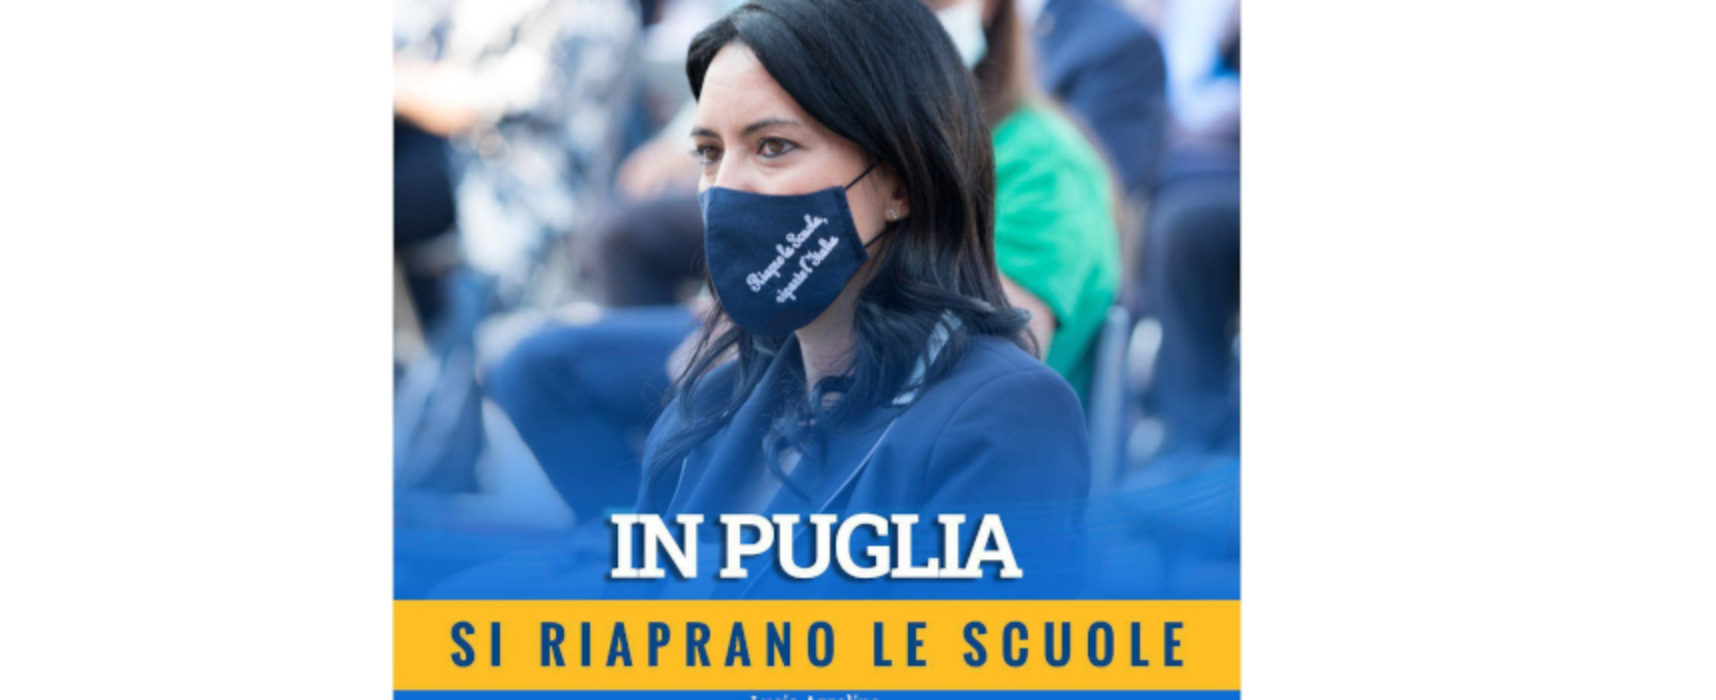 Ministra Azzolina: “In Puglia si riaprano le scuole. I contagi avvengono fuori, non negli istituti”